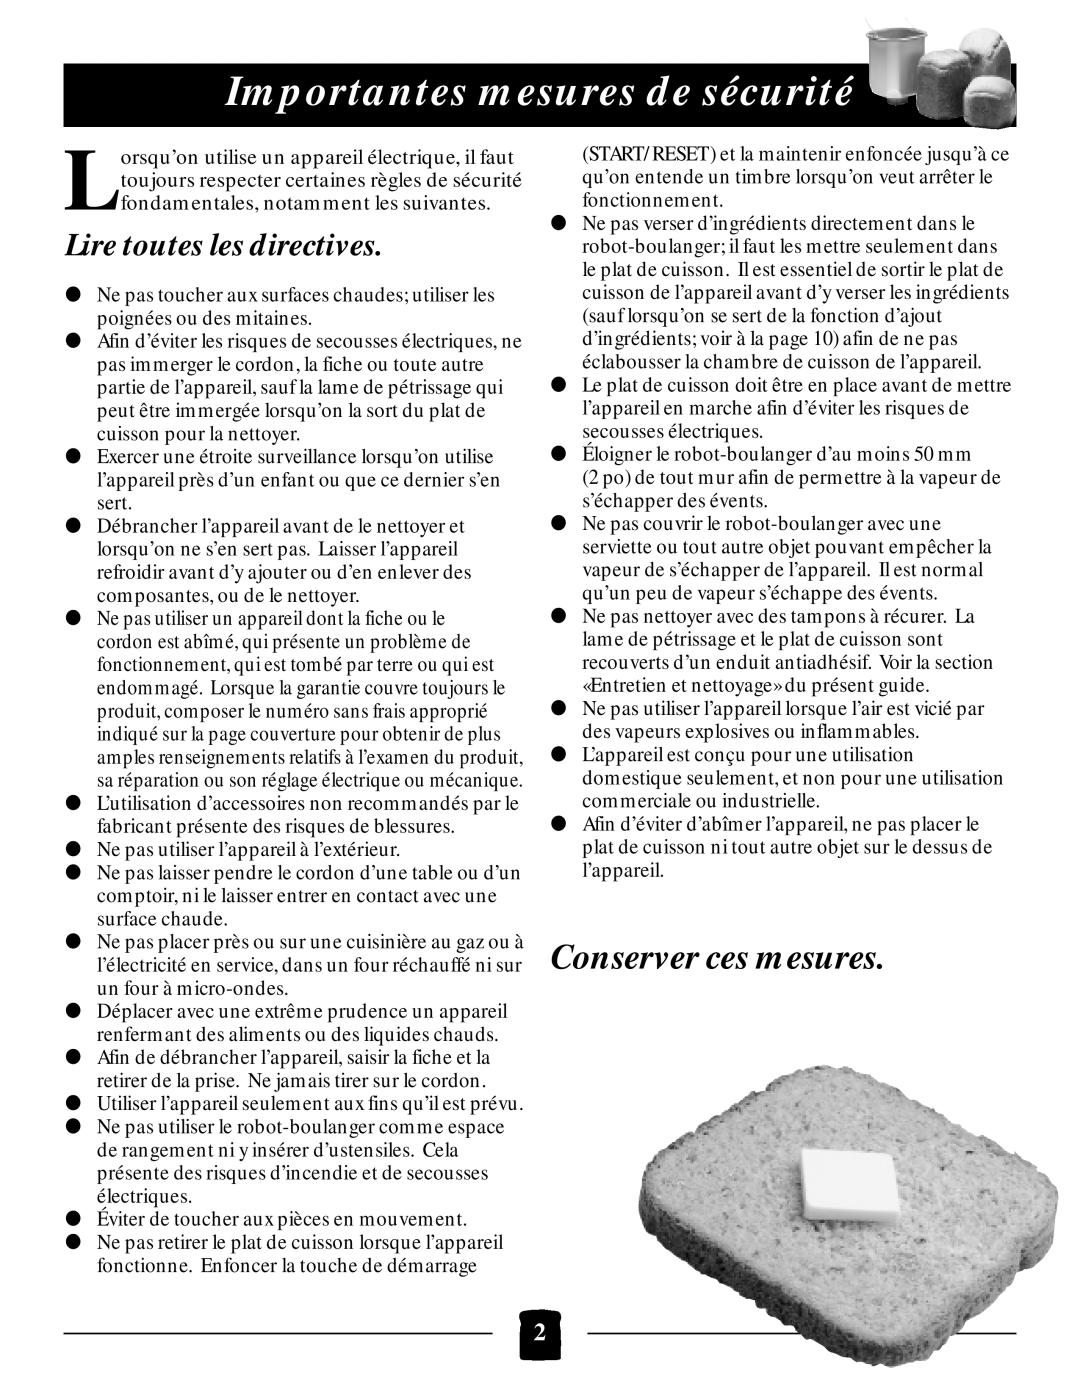 Black & Decker B1650 manual Importantes mesures de sécurité, Lire toutes les directives, Conserver ces mesures 